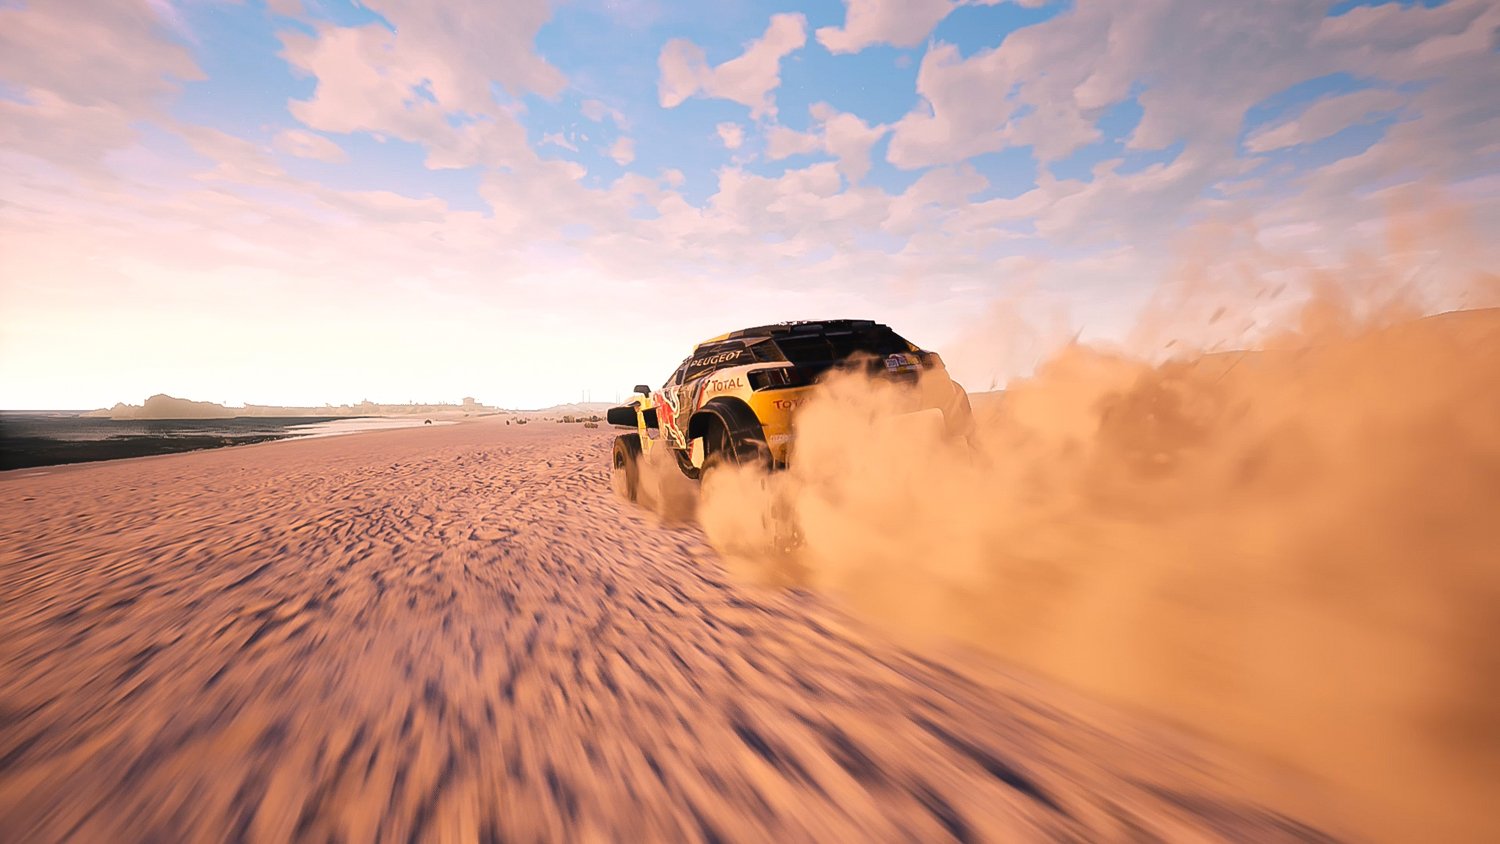 Dakar 18 - Day One Edition [PlayStation 4]